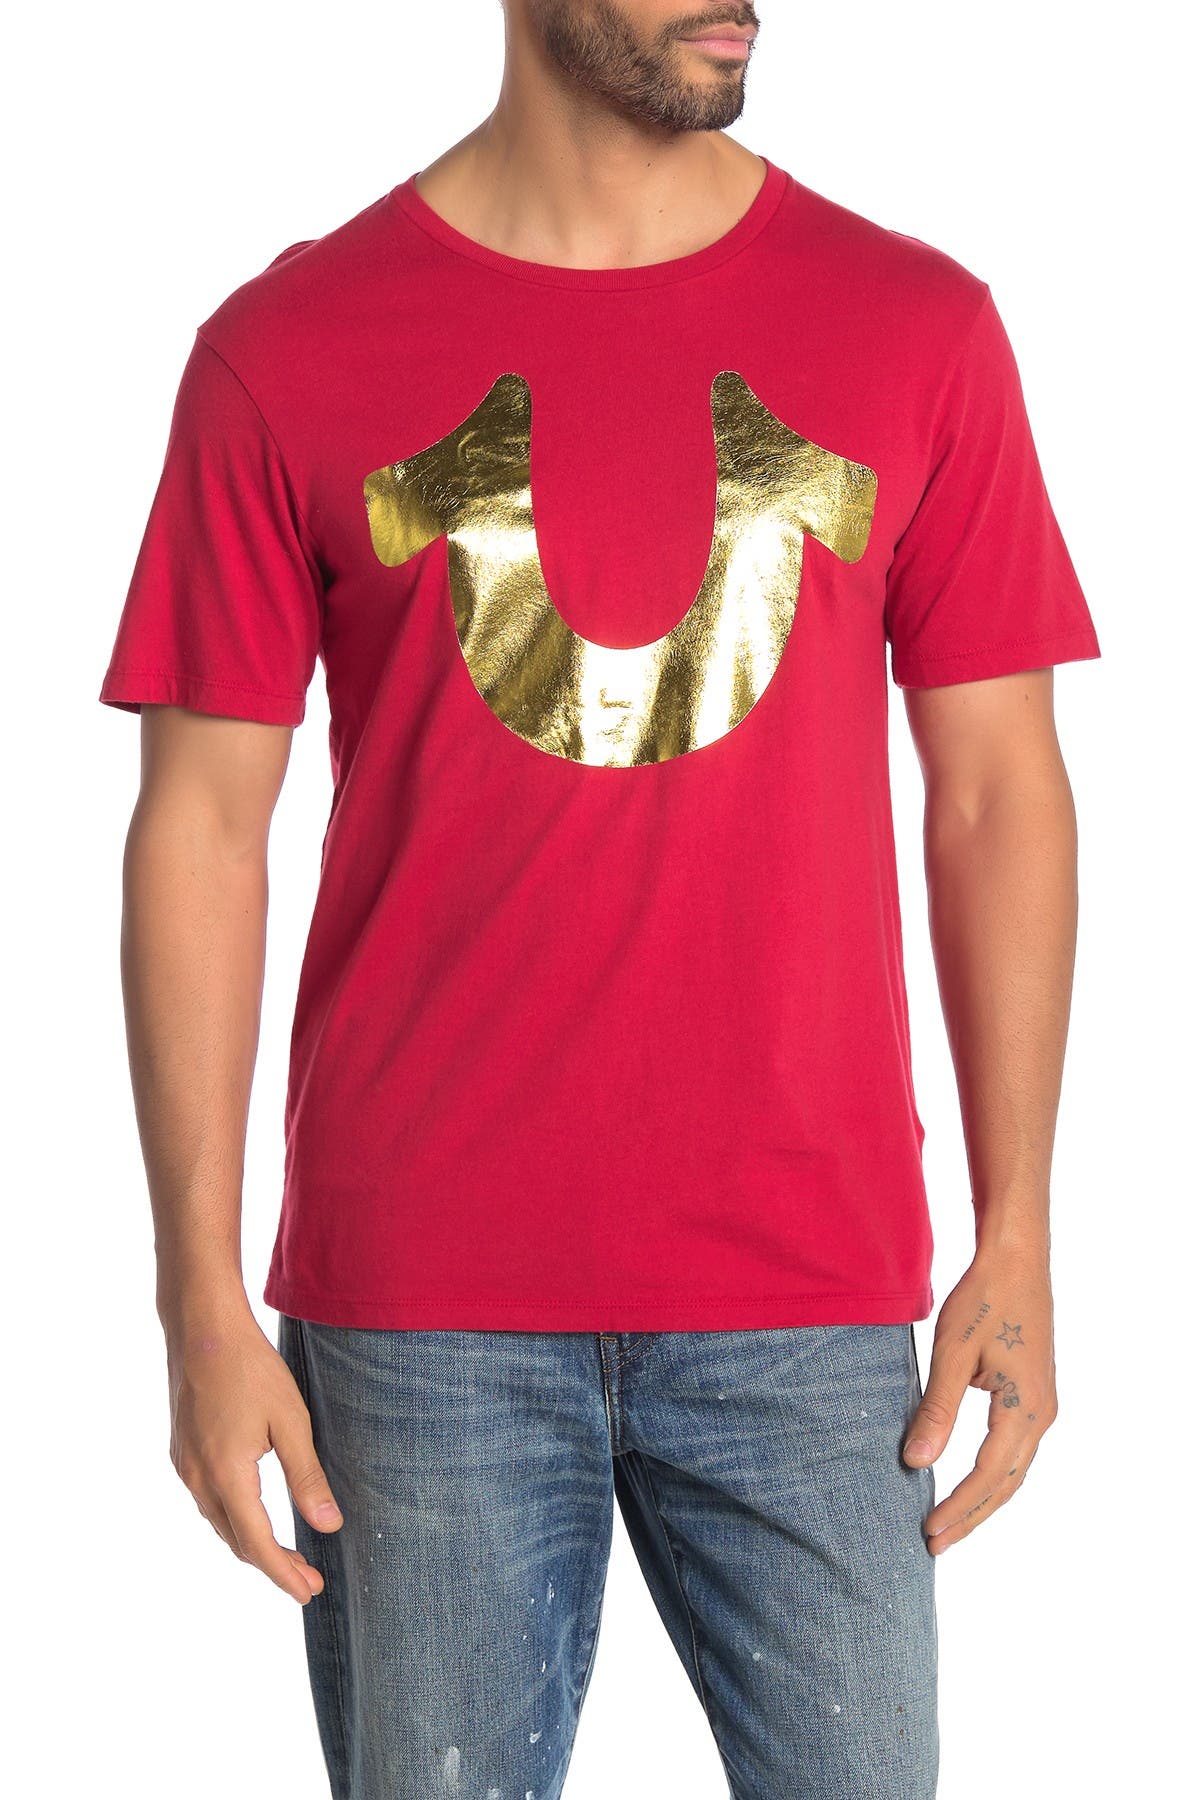 gold true religion shirt